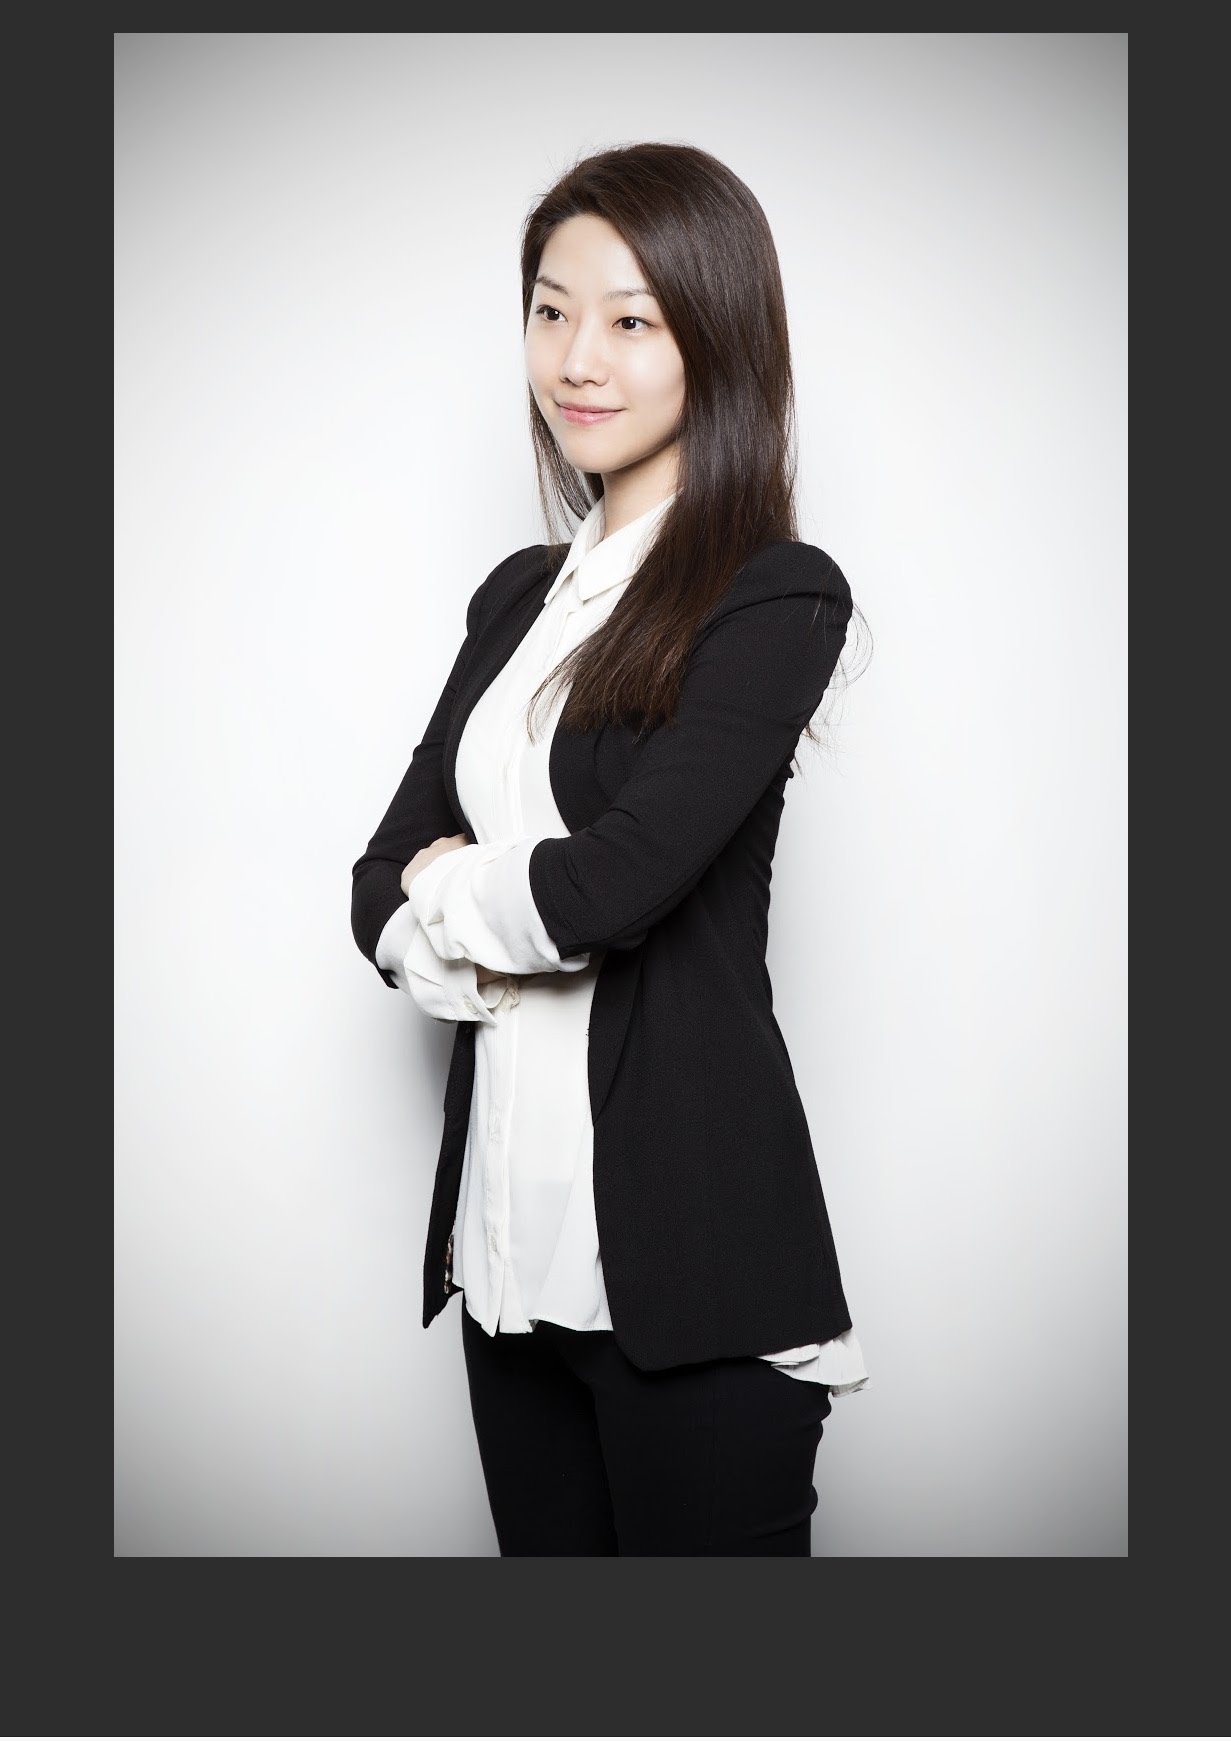 Sophia Hong, CEO of Mask Moments